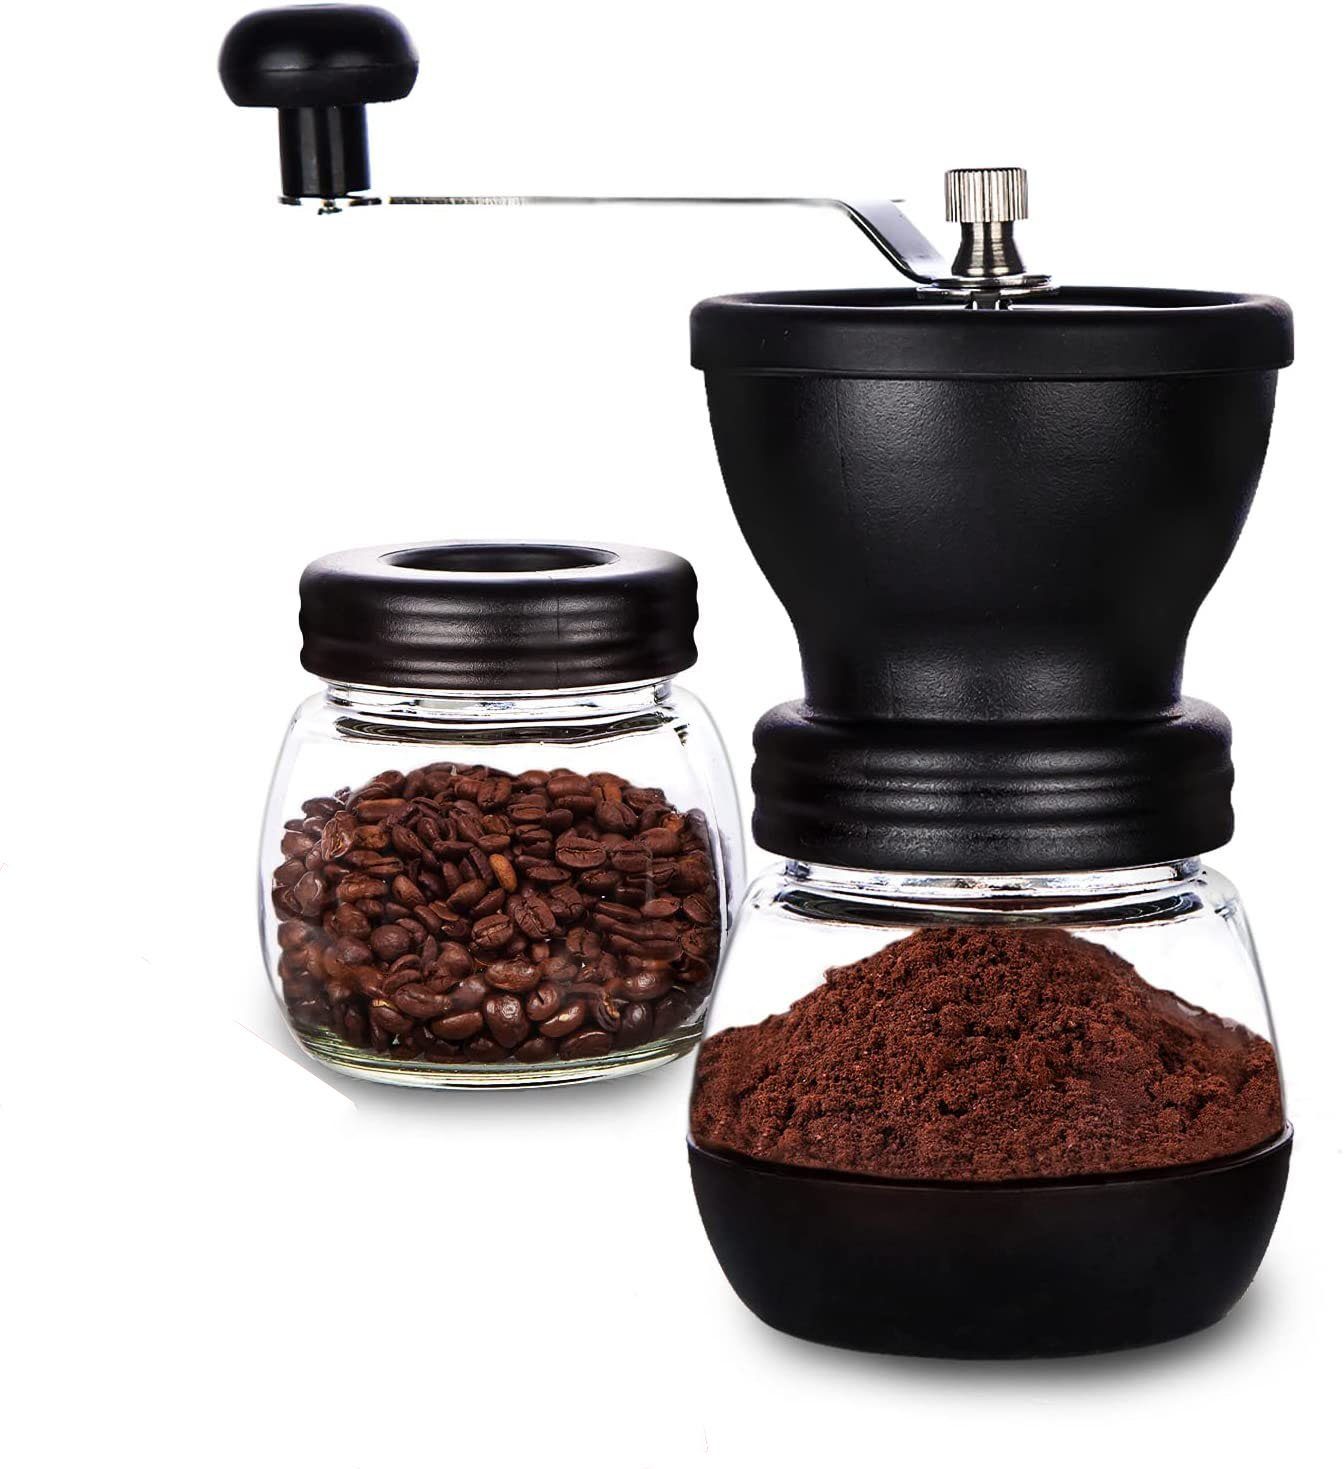 Gläsern aikidio Kaffeemühle Keramikmahlwerk Kaffeemühle mit Kaffeemühle 11oz) (je mit 1